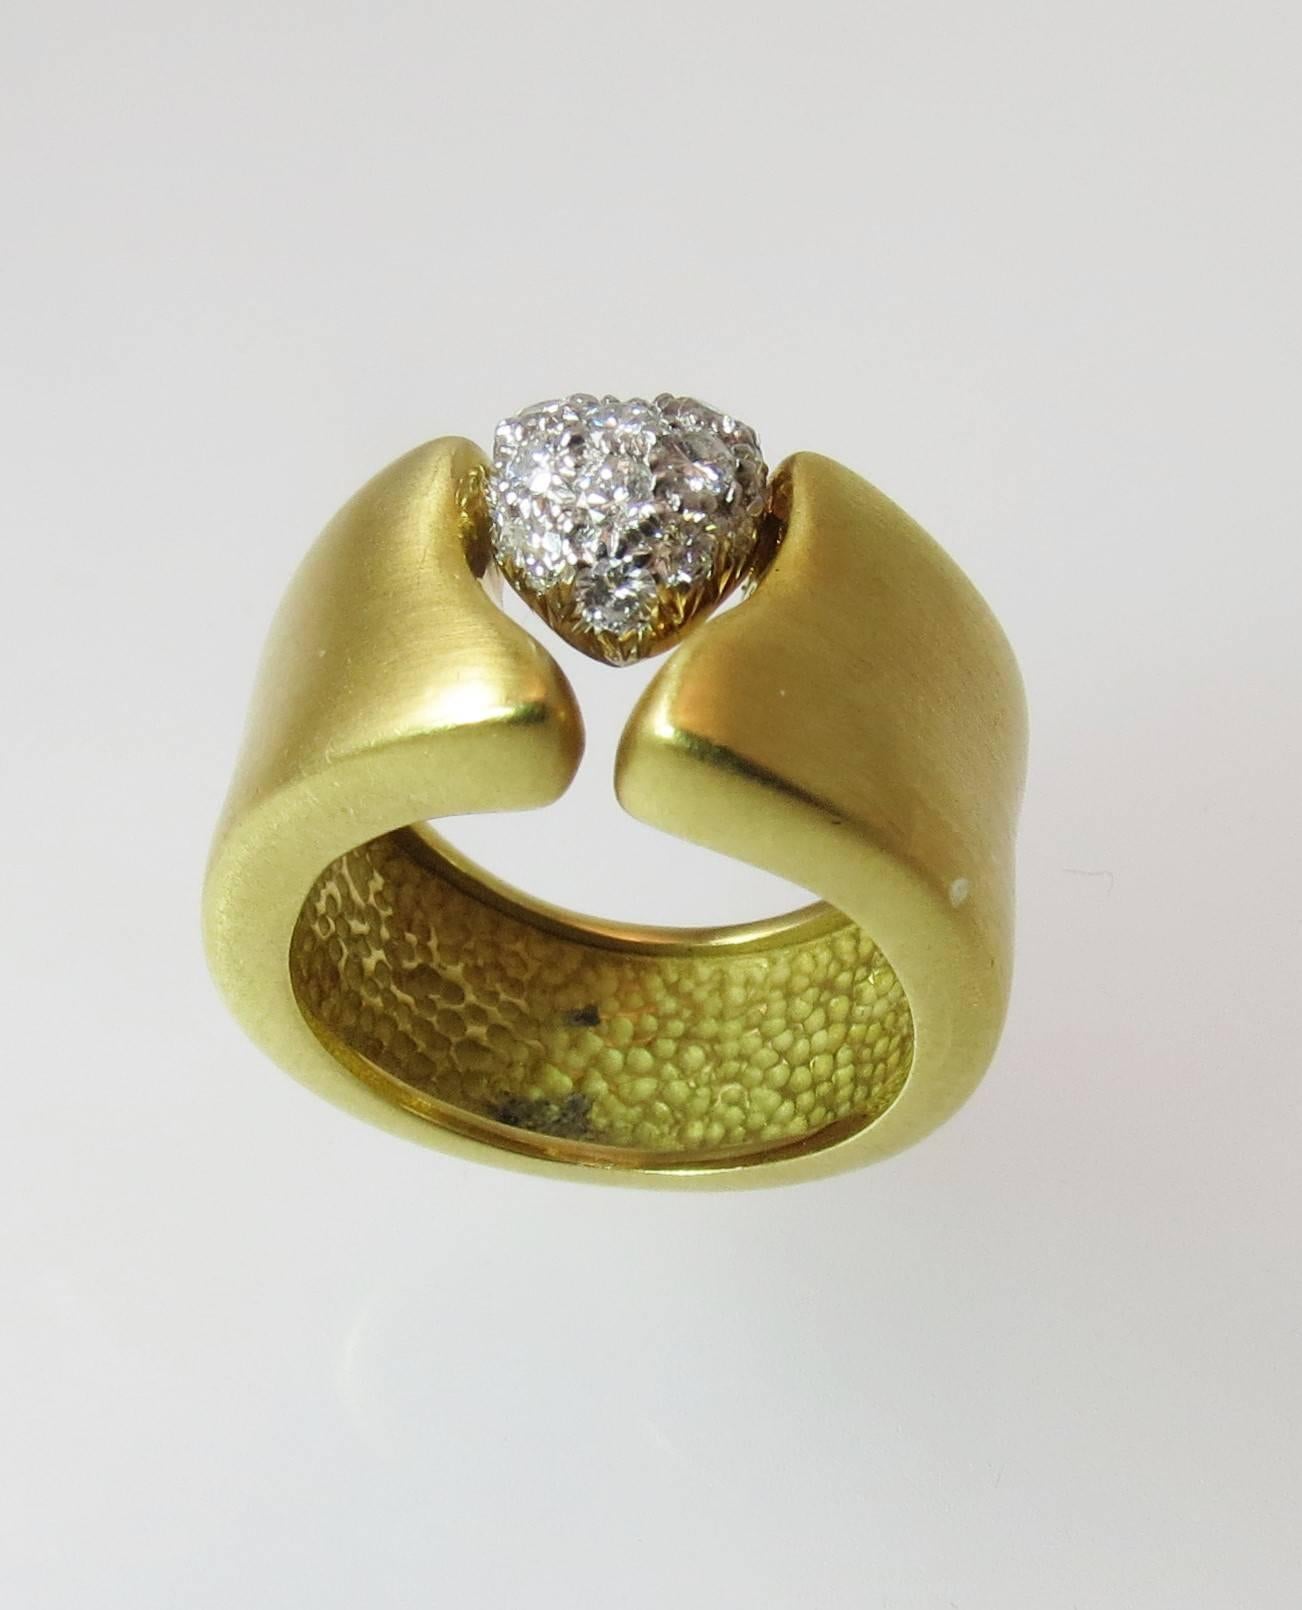 Marlene Stowe 18K Gelbgold Ring mit Pave Herz mit 16 runden Diamanten im Vollschliff mit einem Gesamtgewicht von 0,36cts.
Breite verjüngt sich von 1/2 Zoll auf 3/8 Zoll